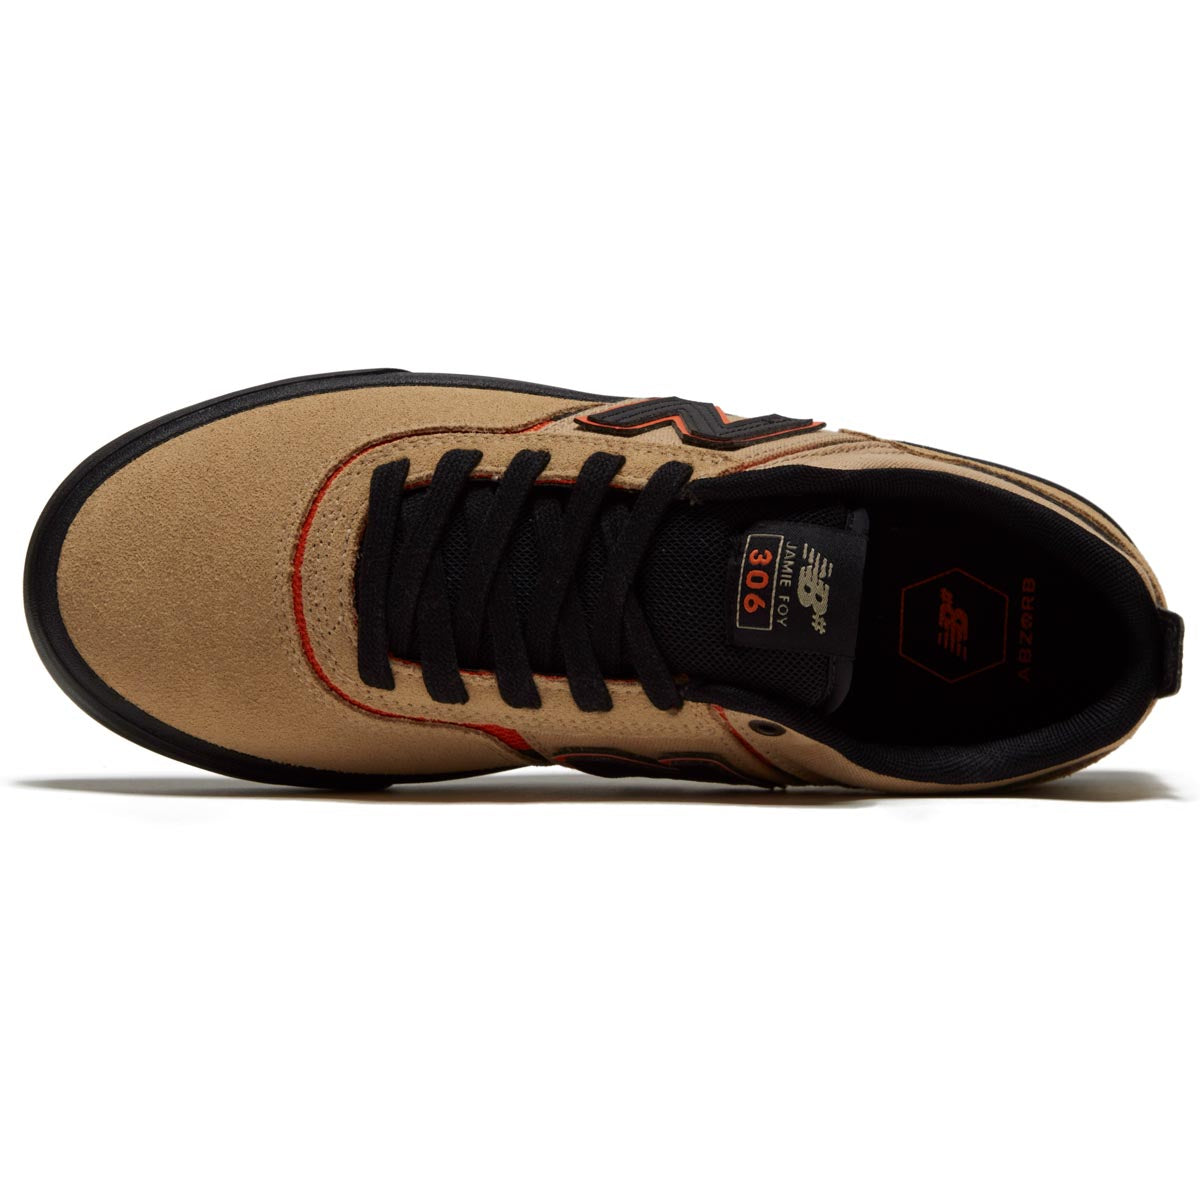 New Balance 306 Foy Shoes - Khaki/Black image 3